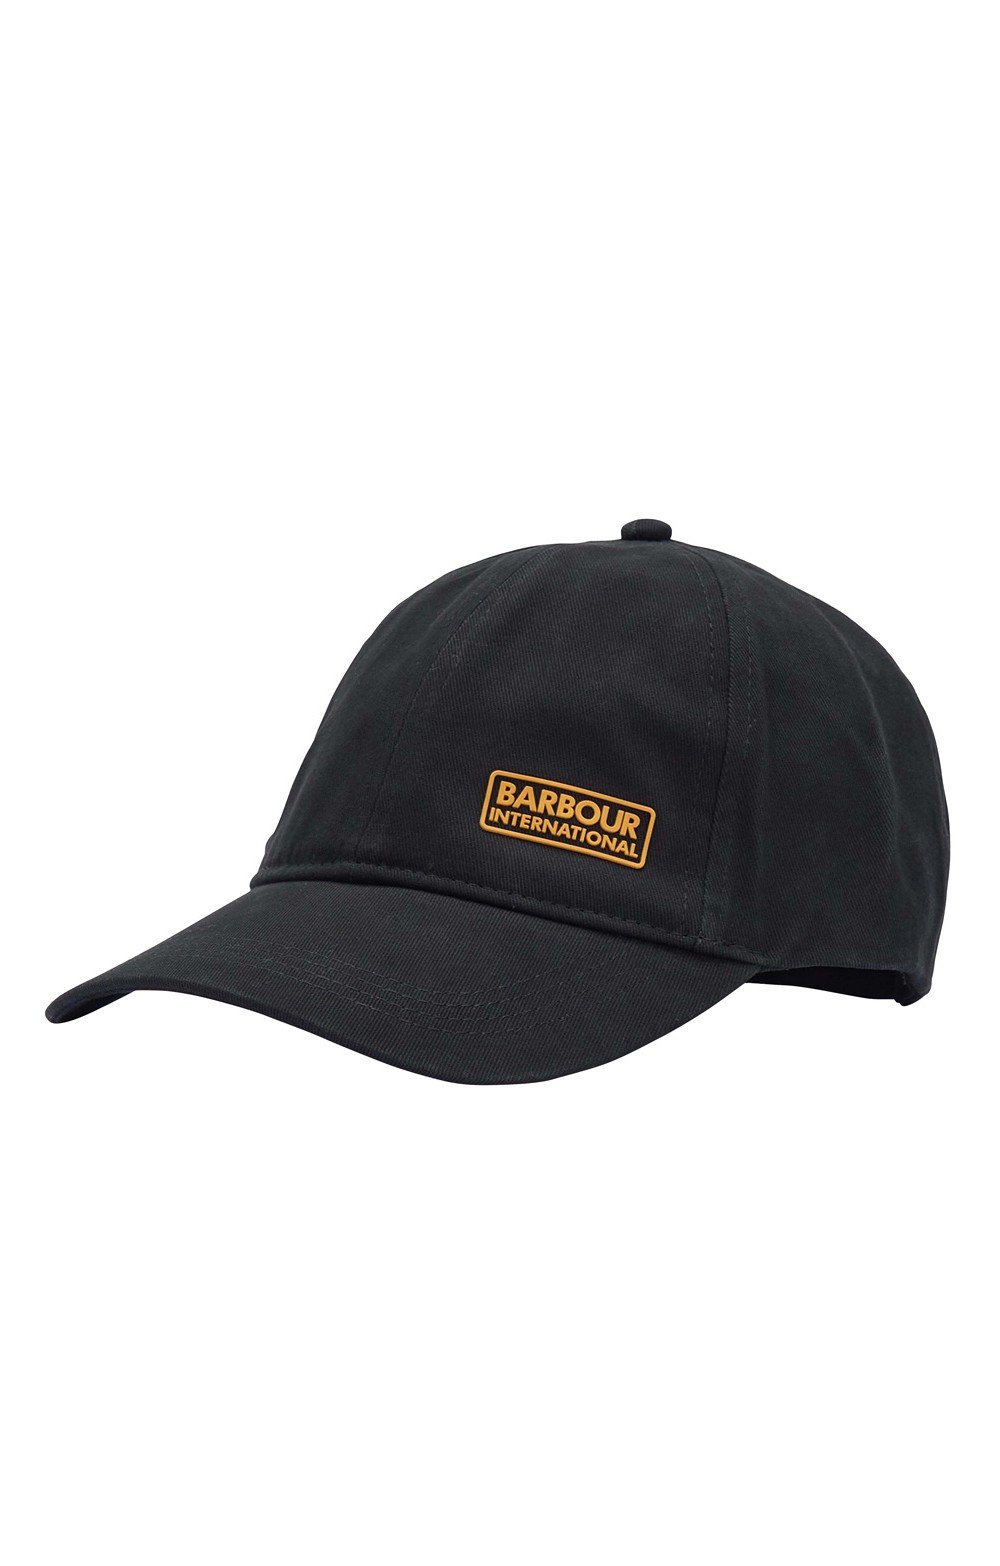 barbour international norton drill cap